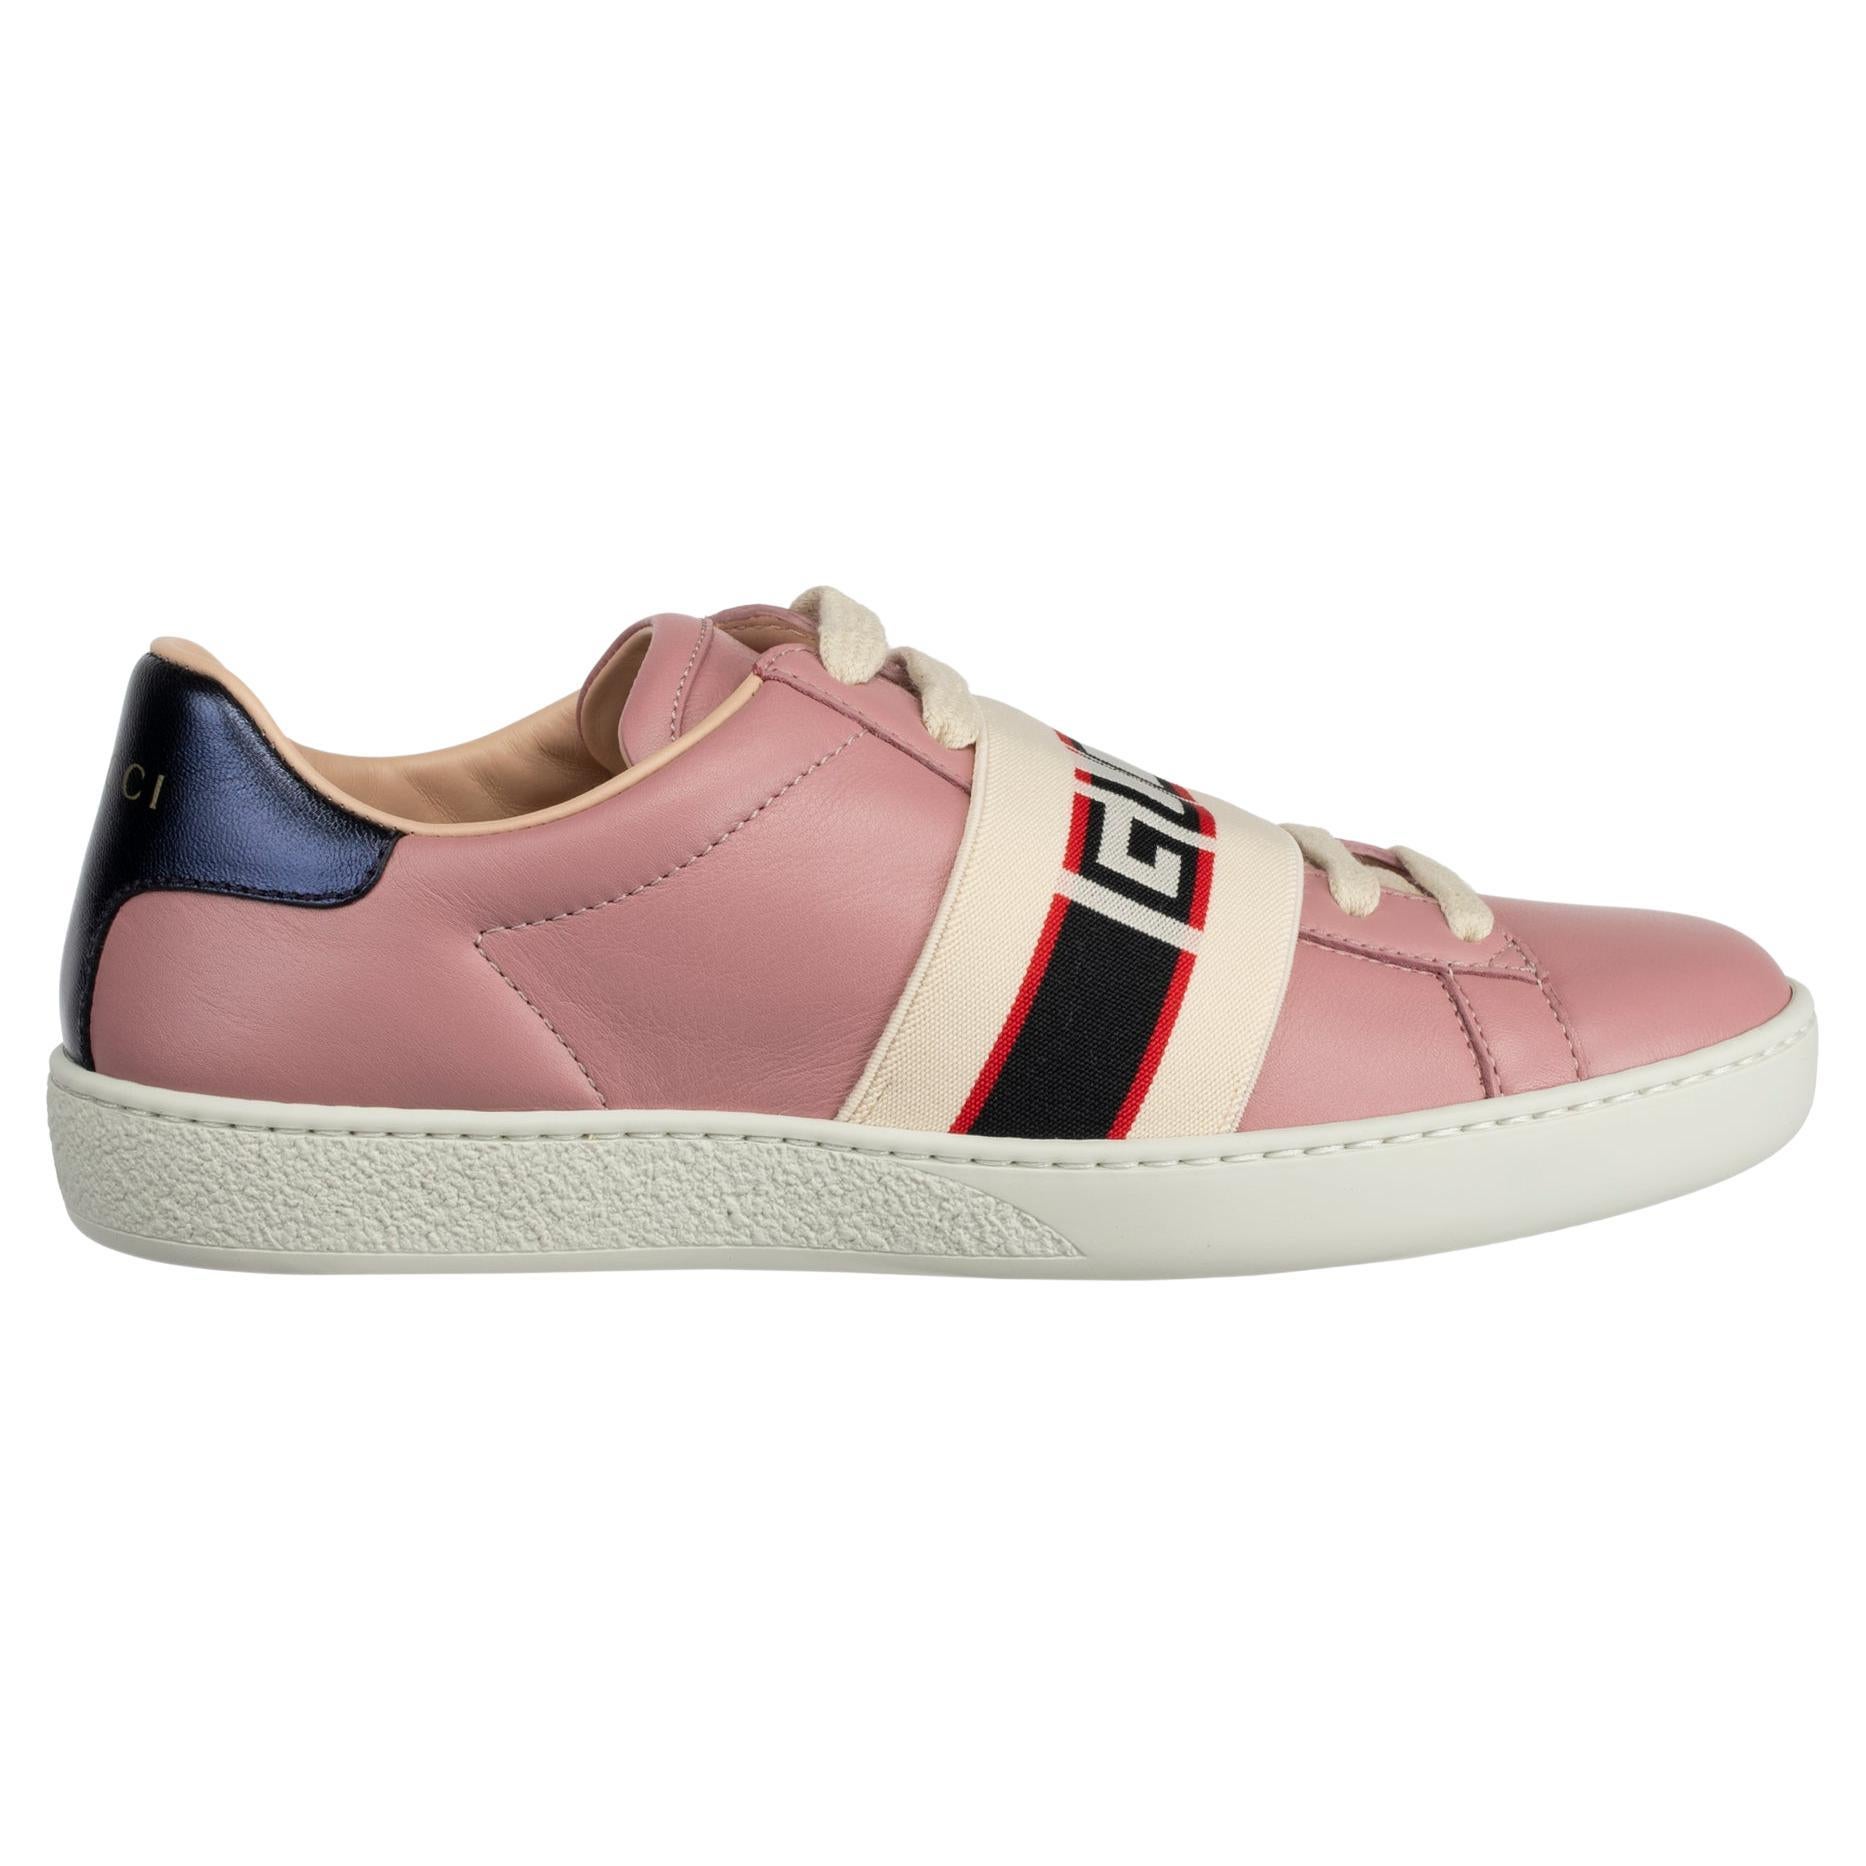 Gucci Ace Sneaker Dusty Pink & Metallic Blue 35 IT For Sale